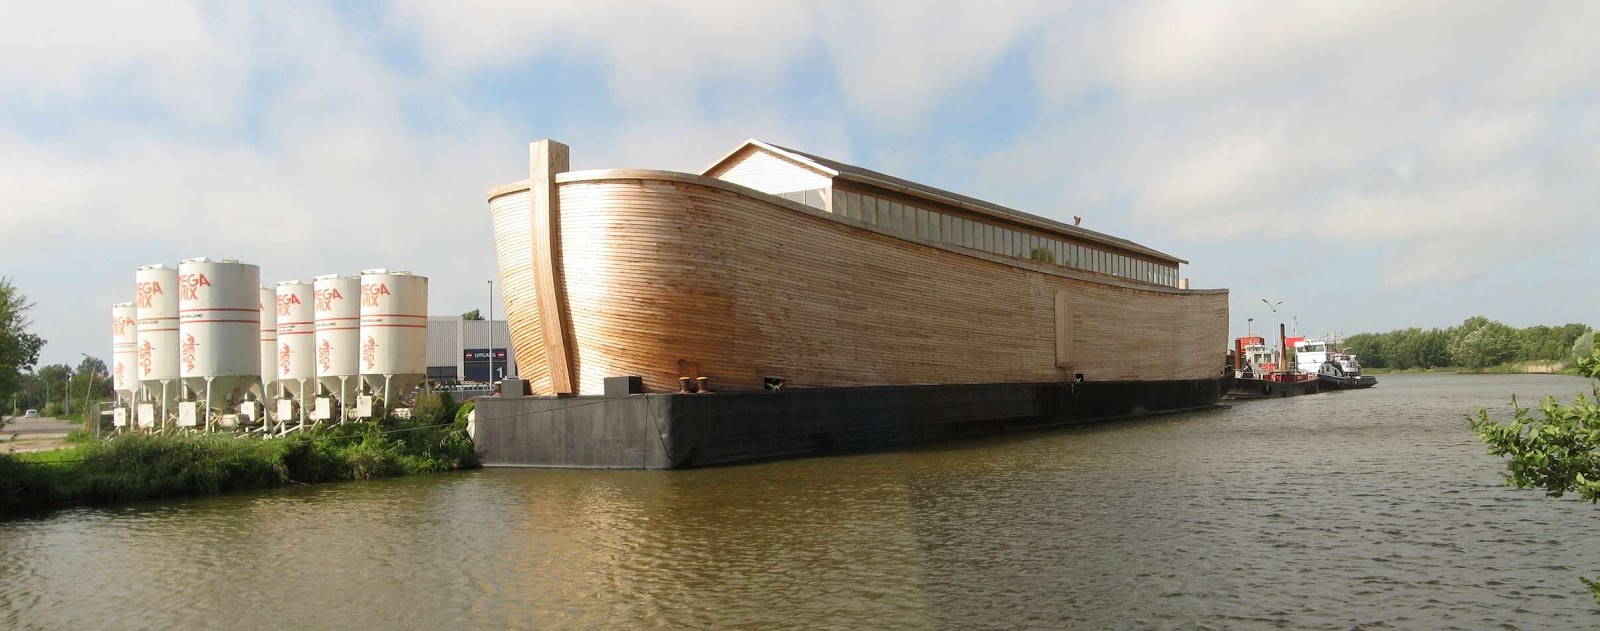 Reprodução real da Arca de Noé